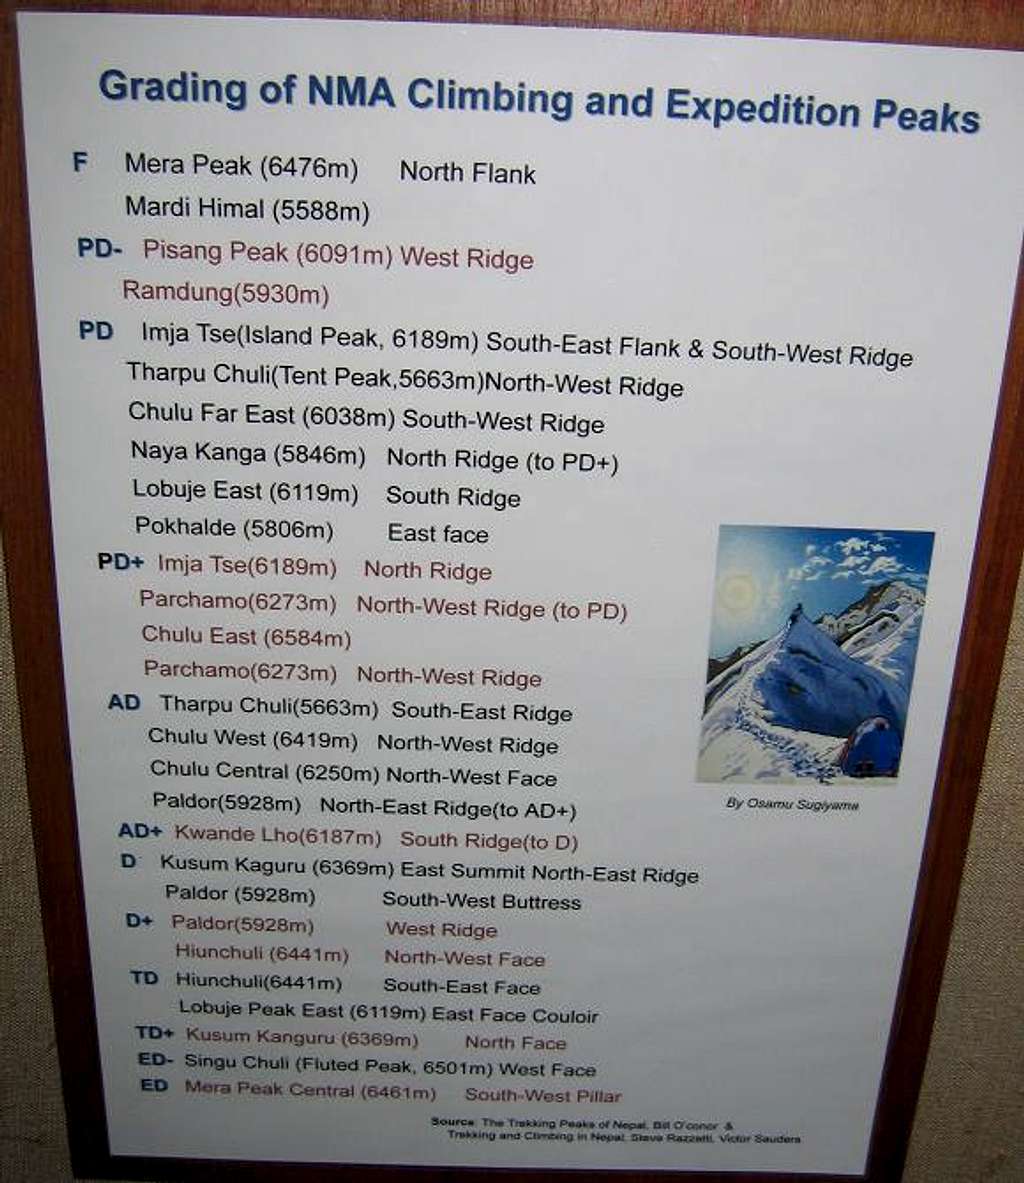 Grading of NMA peaks